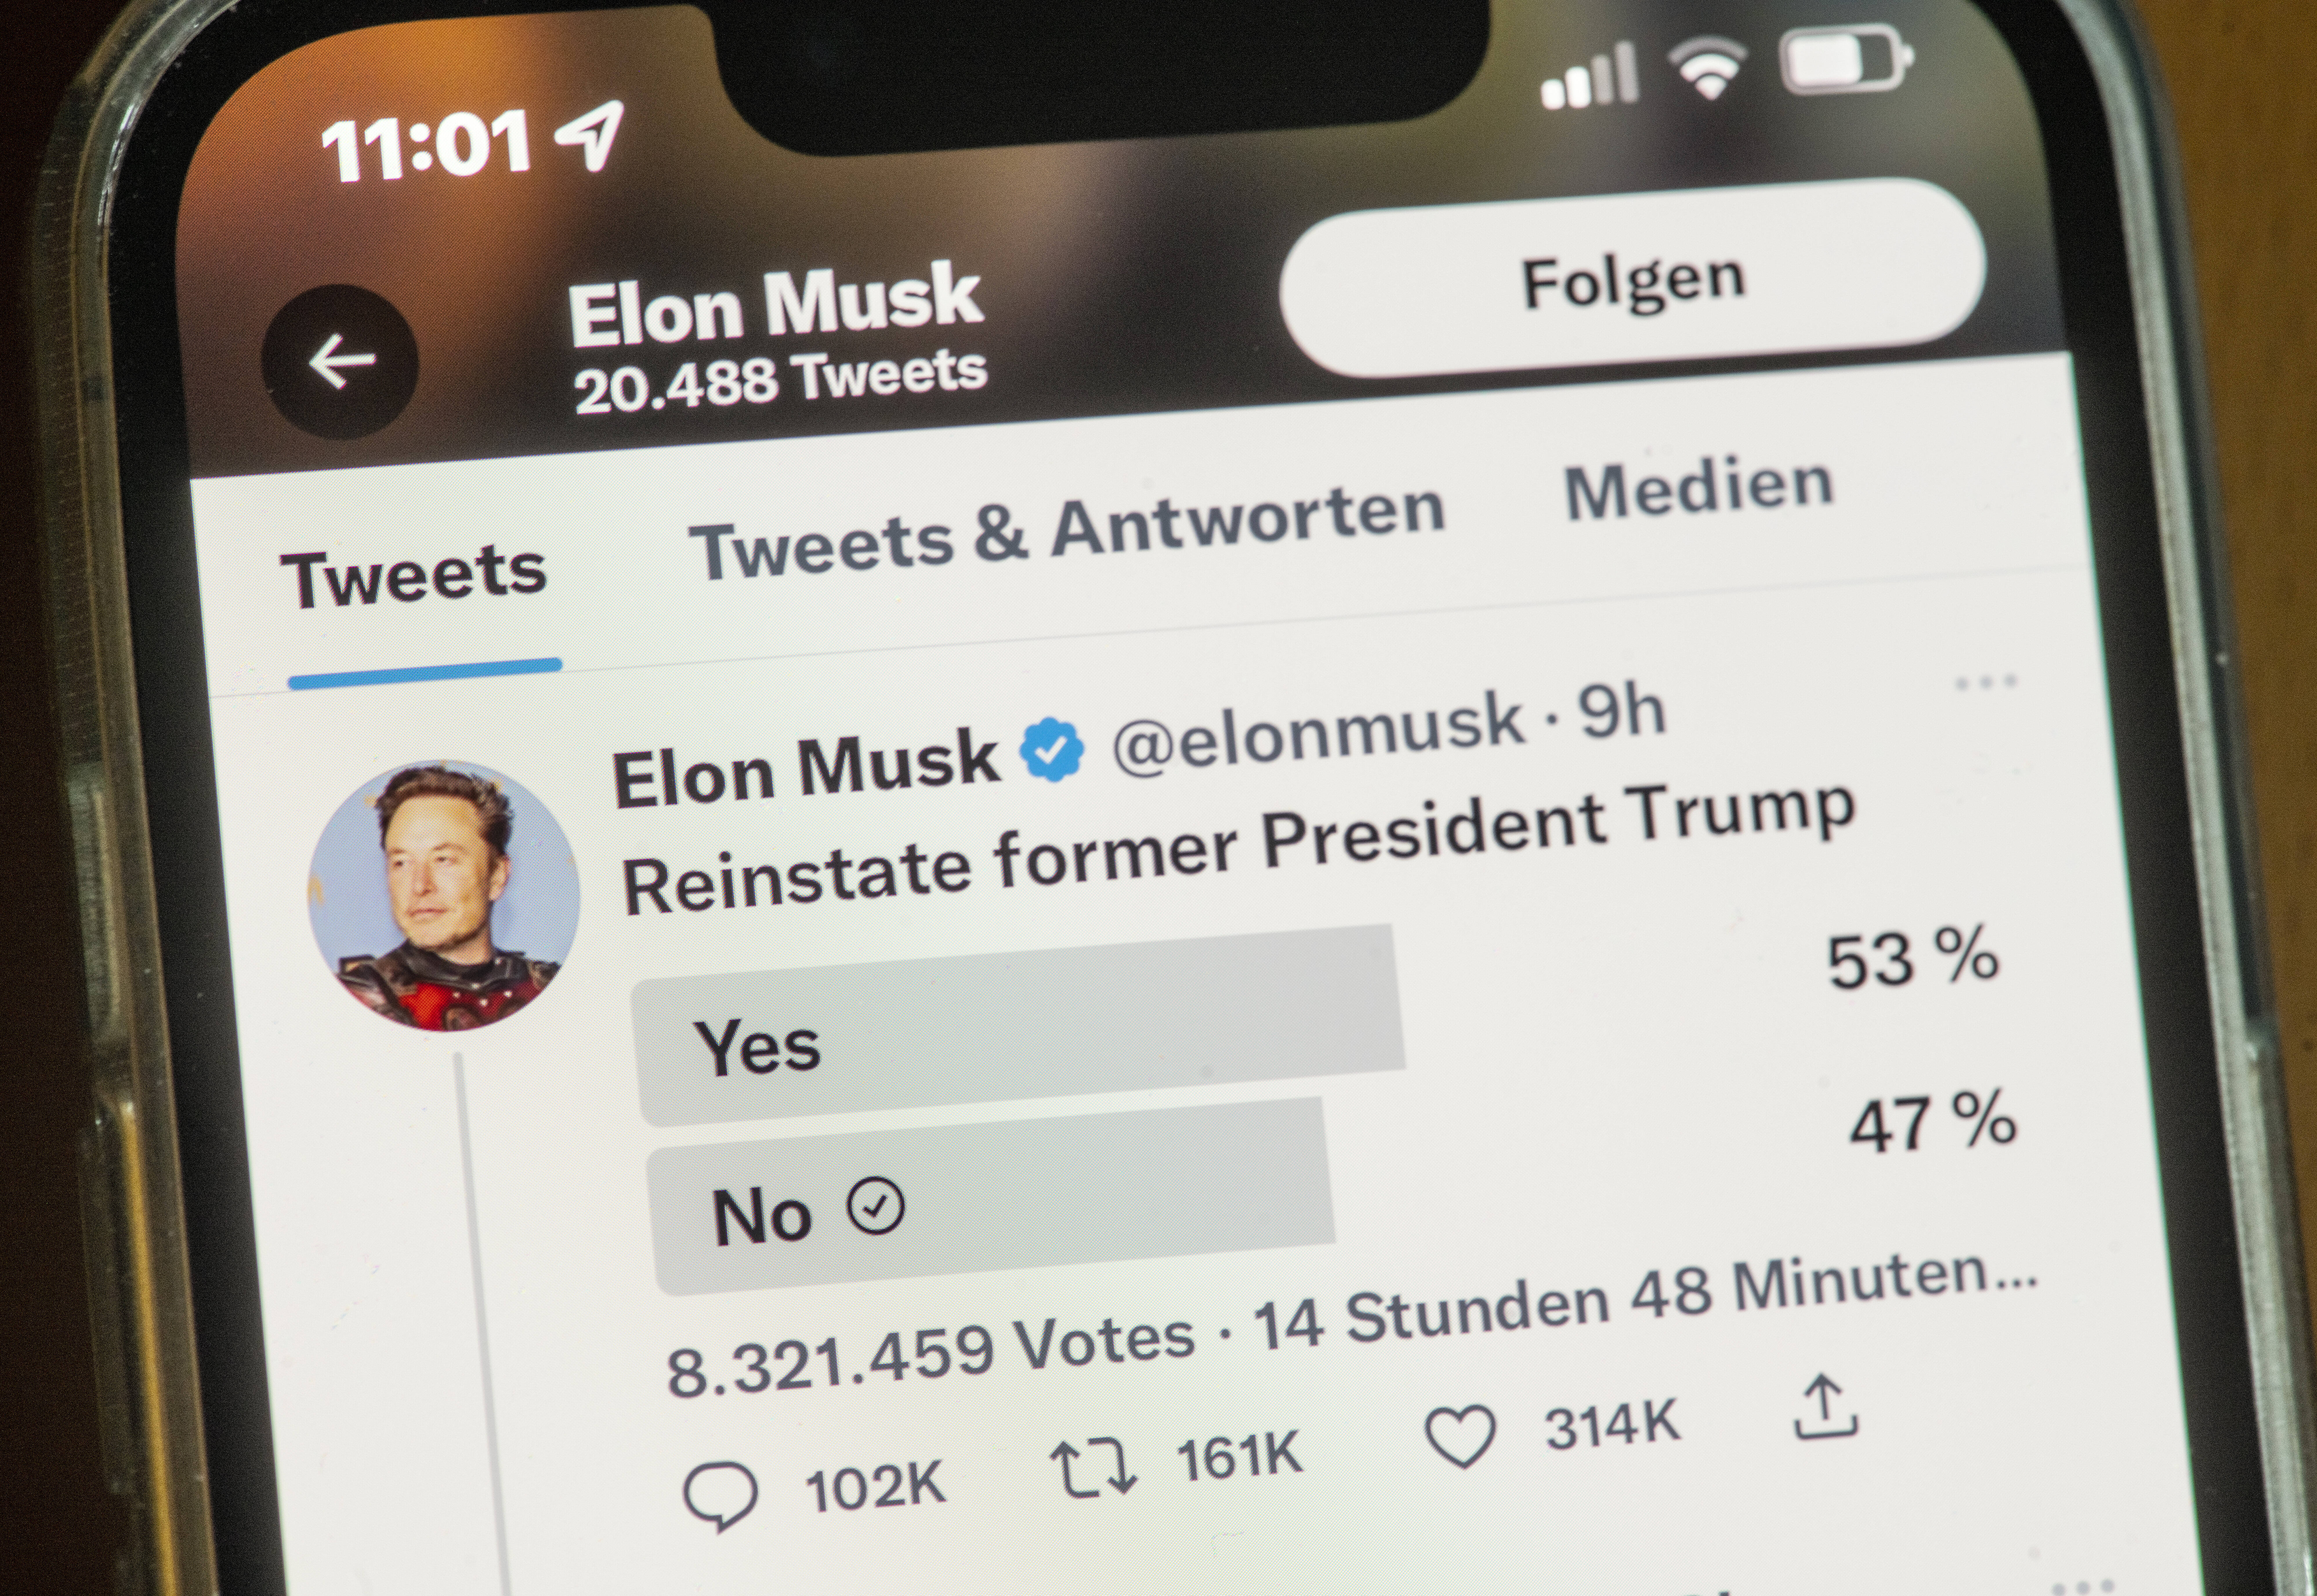 Ein Smartphonebildschirm, auf dem eine Twitter-Umfrage des Inhabers Elon Musk zu sehen ist, ob der ehemalige Präsident Donald Trump wieder für die Plattform zugelassen werden soll. Ja: 53%, Nein (auch durch den:die Nutzer:in angekreuzt) 47%.